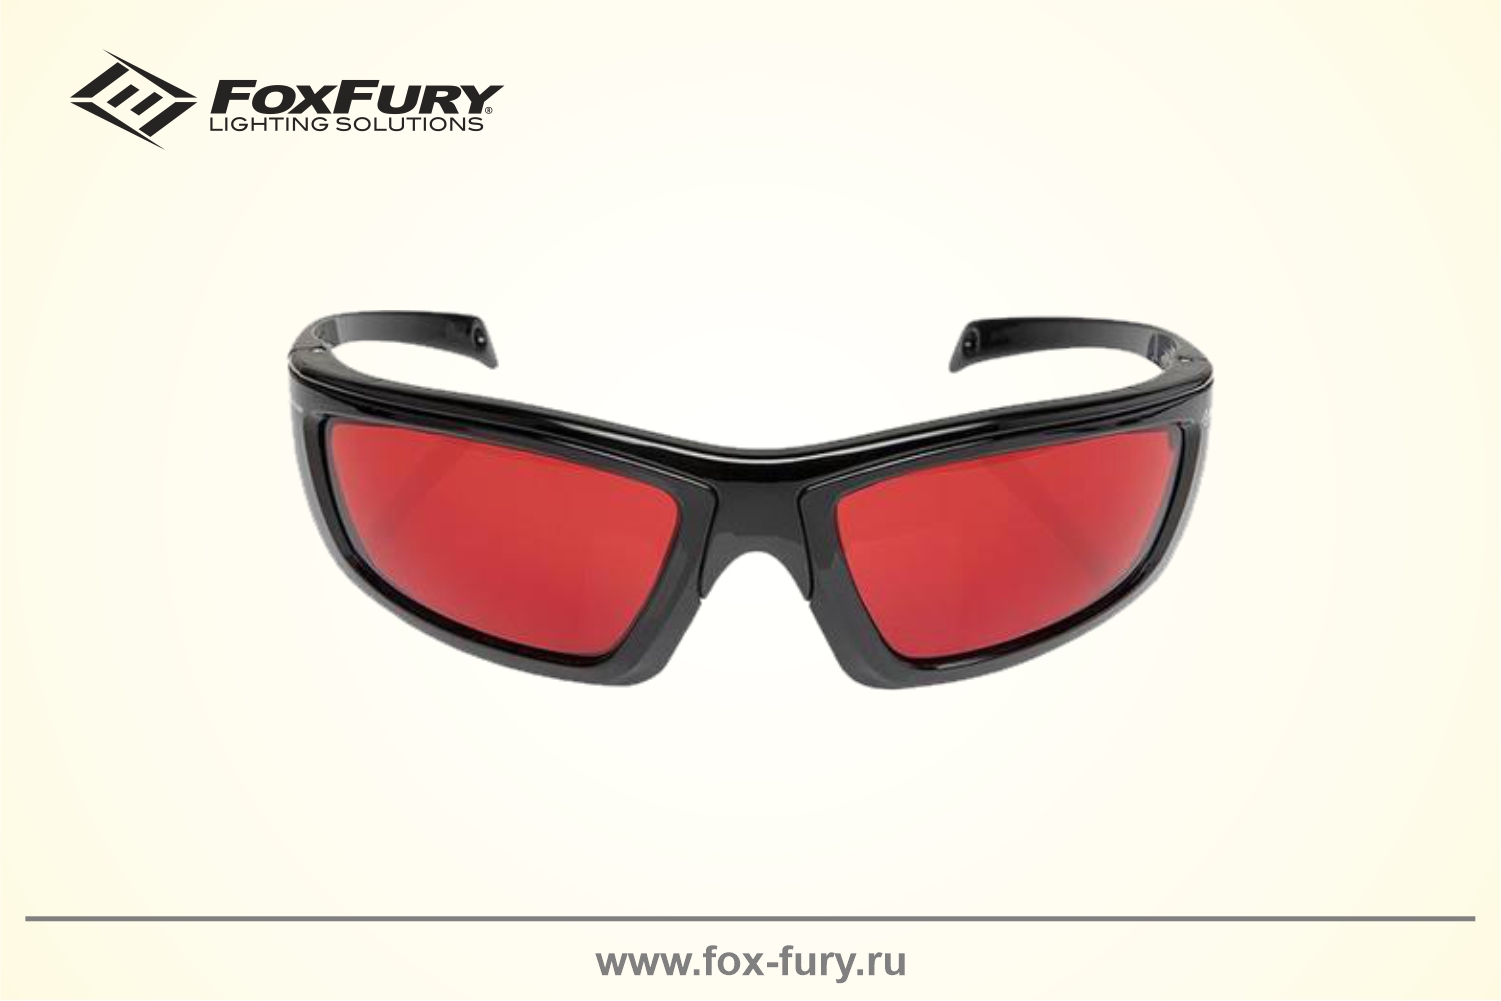 Очки для криминалистики FoxFury CS EYE красные 600-1140